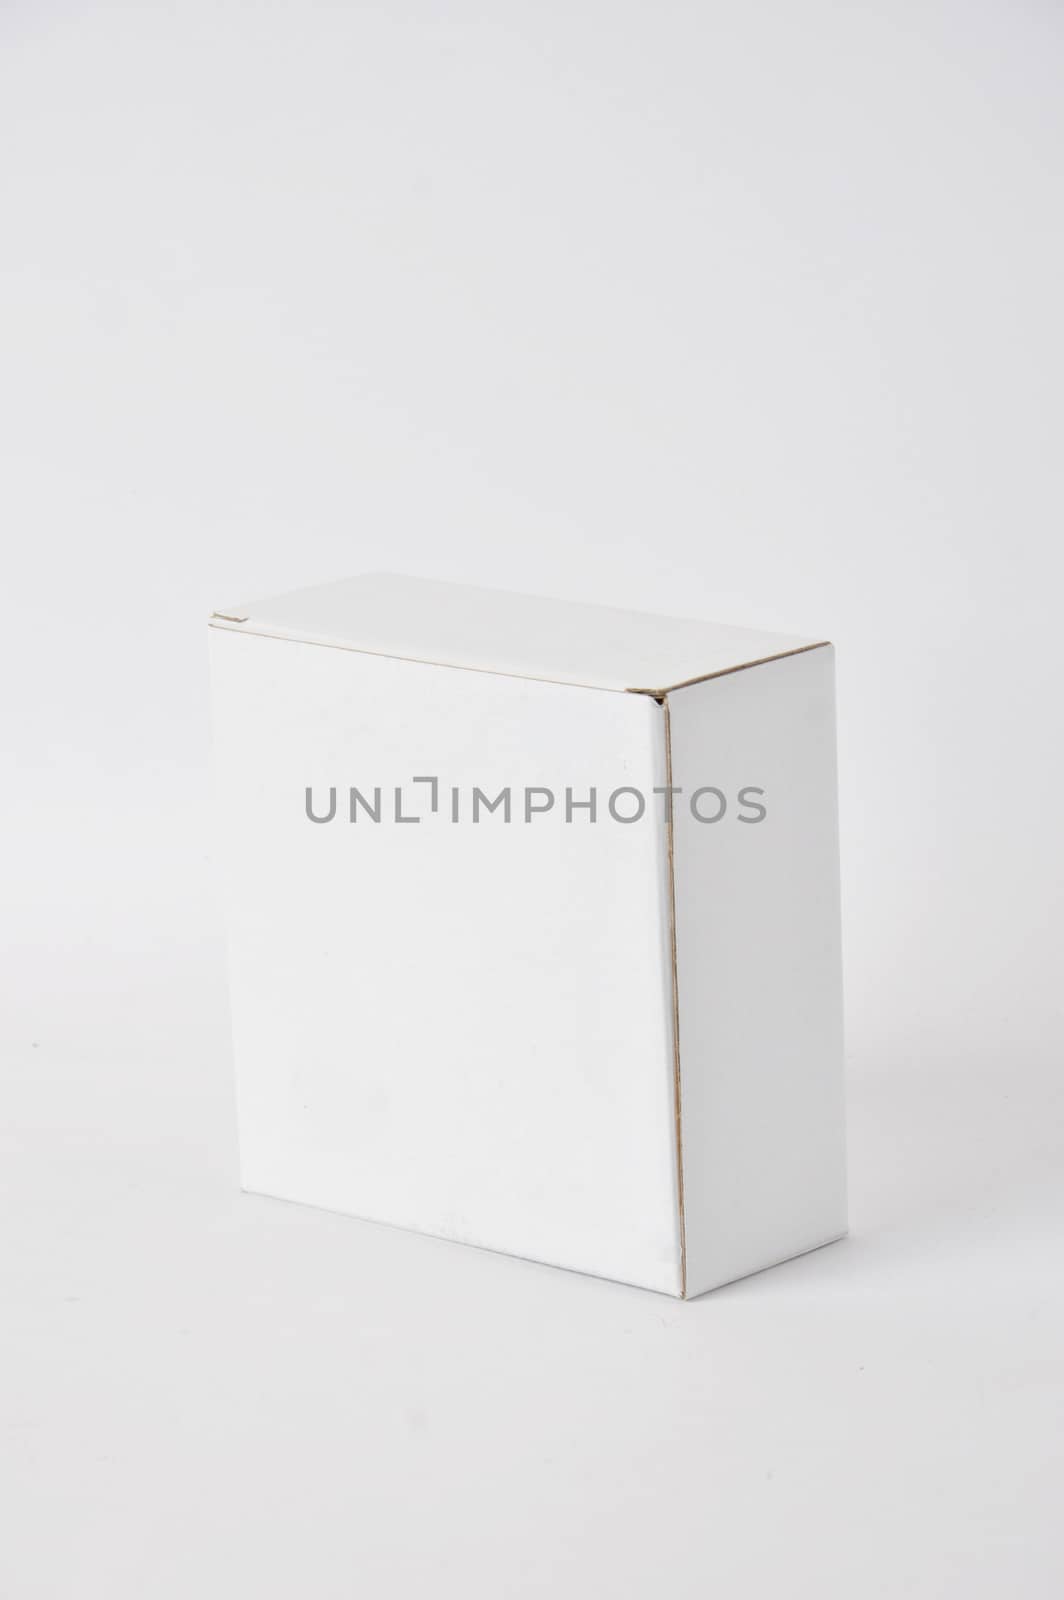 white carton on white background